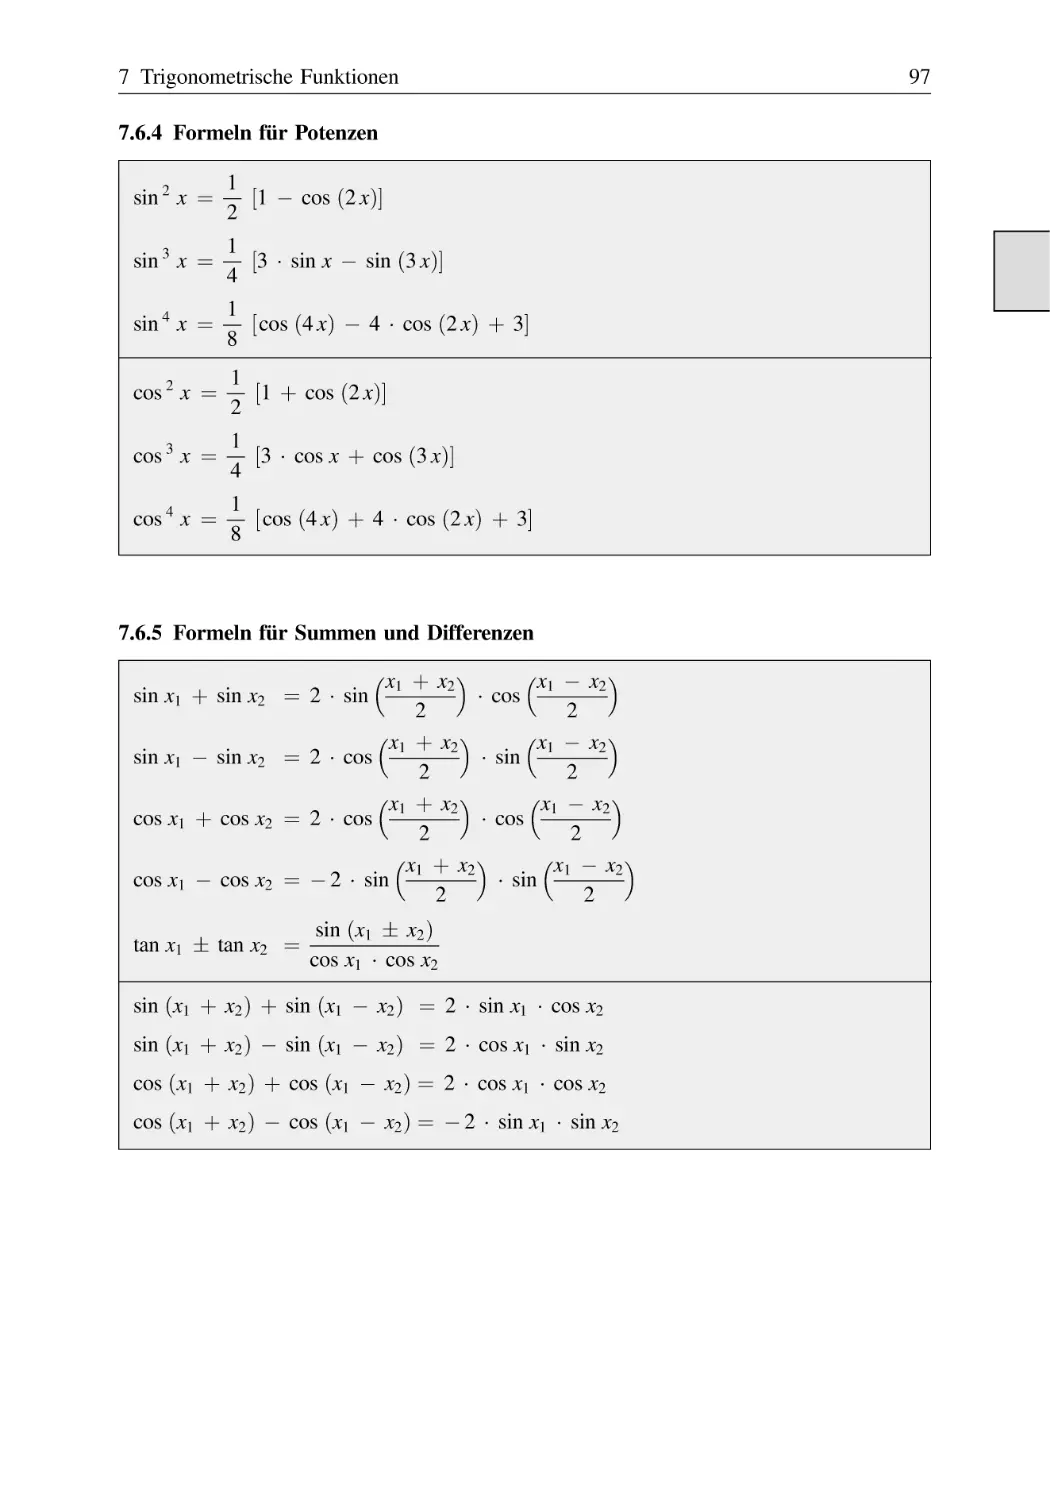 7.6.4 Formeln für Potenzen
7.6.5 Formeln für Summen und Differenzen